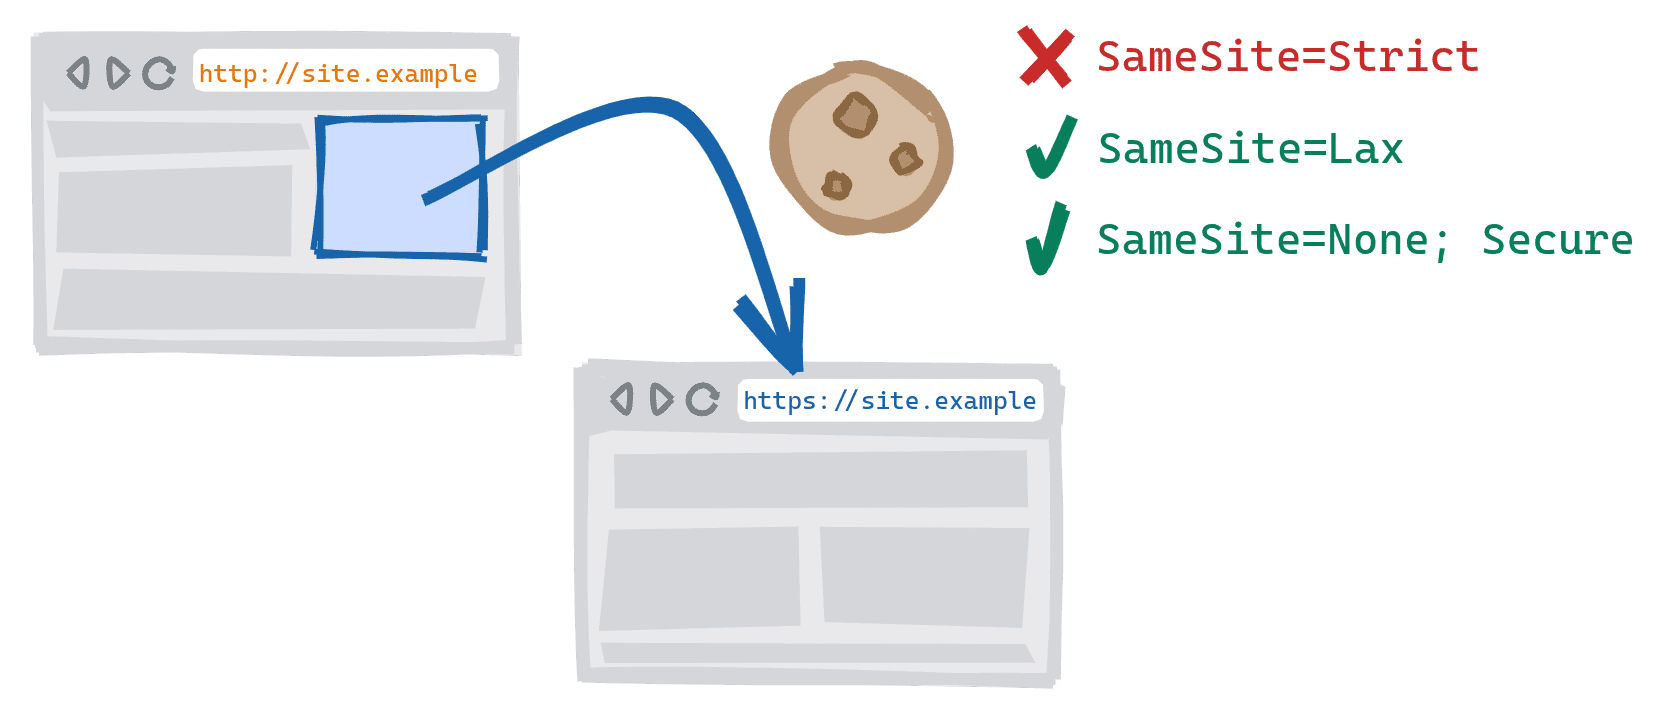 ניווט בכמה סכימות שמופעל על ידי לחיצה על קישור בגרסת ה-HTTP לא מאובטחת של אתר לגרסת ה-HTTPS המאובטחת. SameSite=Strict קובצי cookie חסומים, SameSite=Lax ו-SameSite=None; מותר להשתמש בקובצי Cookie מאובטחים.